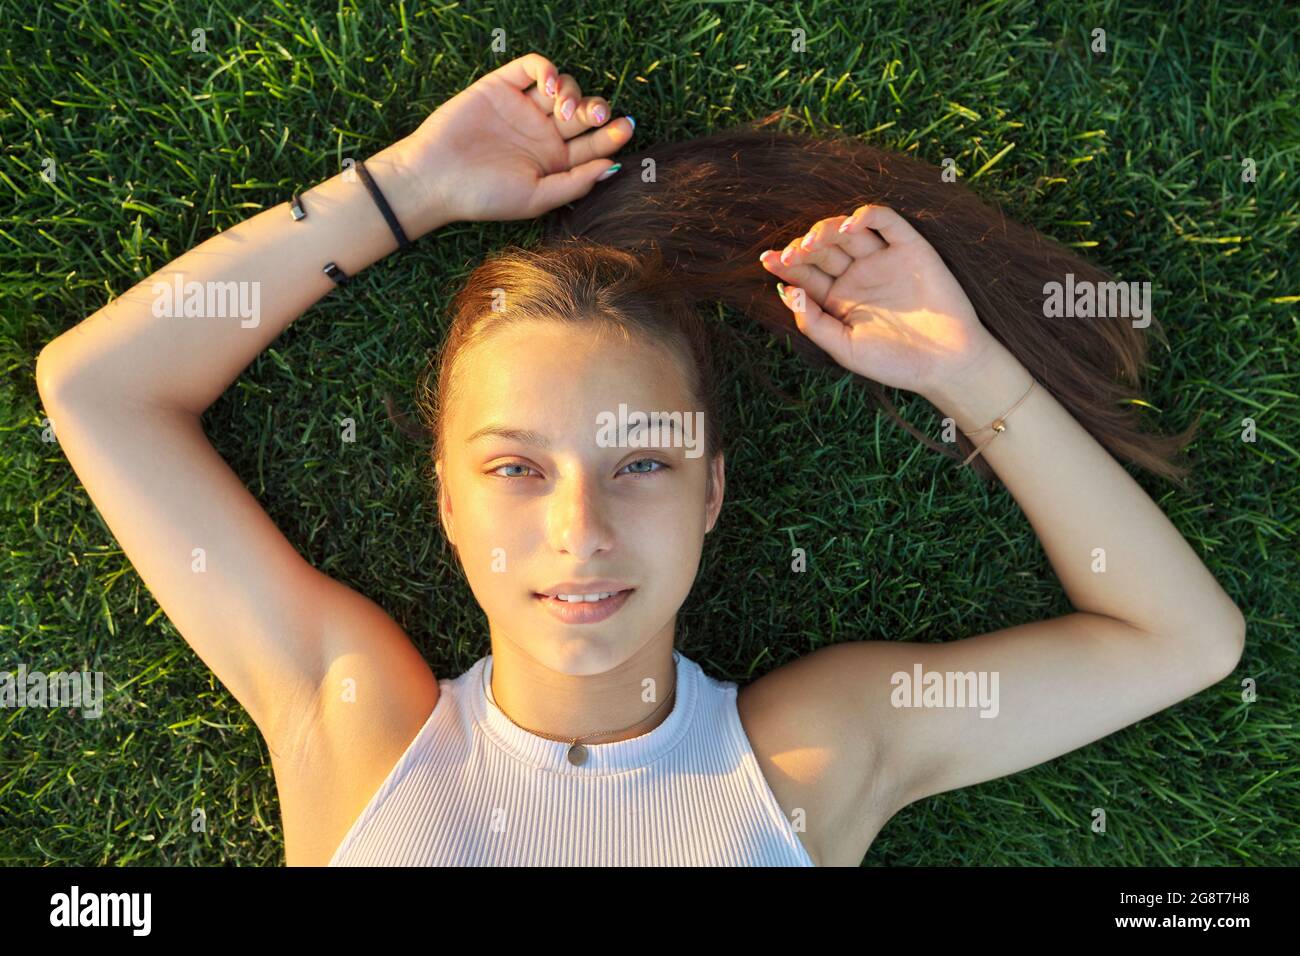 Porträt eines Teenagers, Draufsicht, lächelnd schöne Frau, die auf grünem Gras liegt Stockfoto